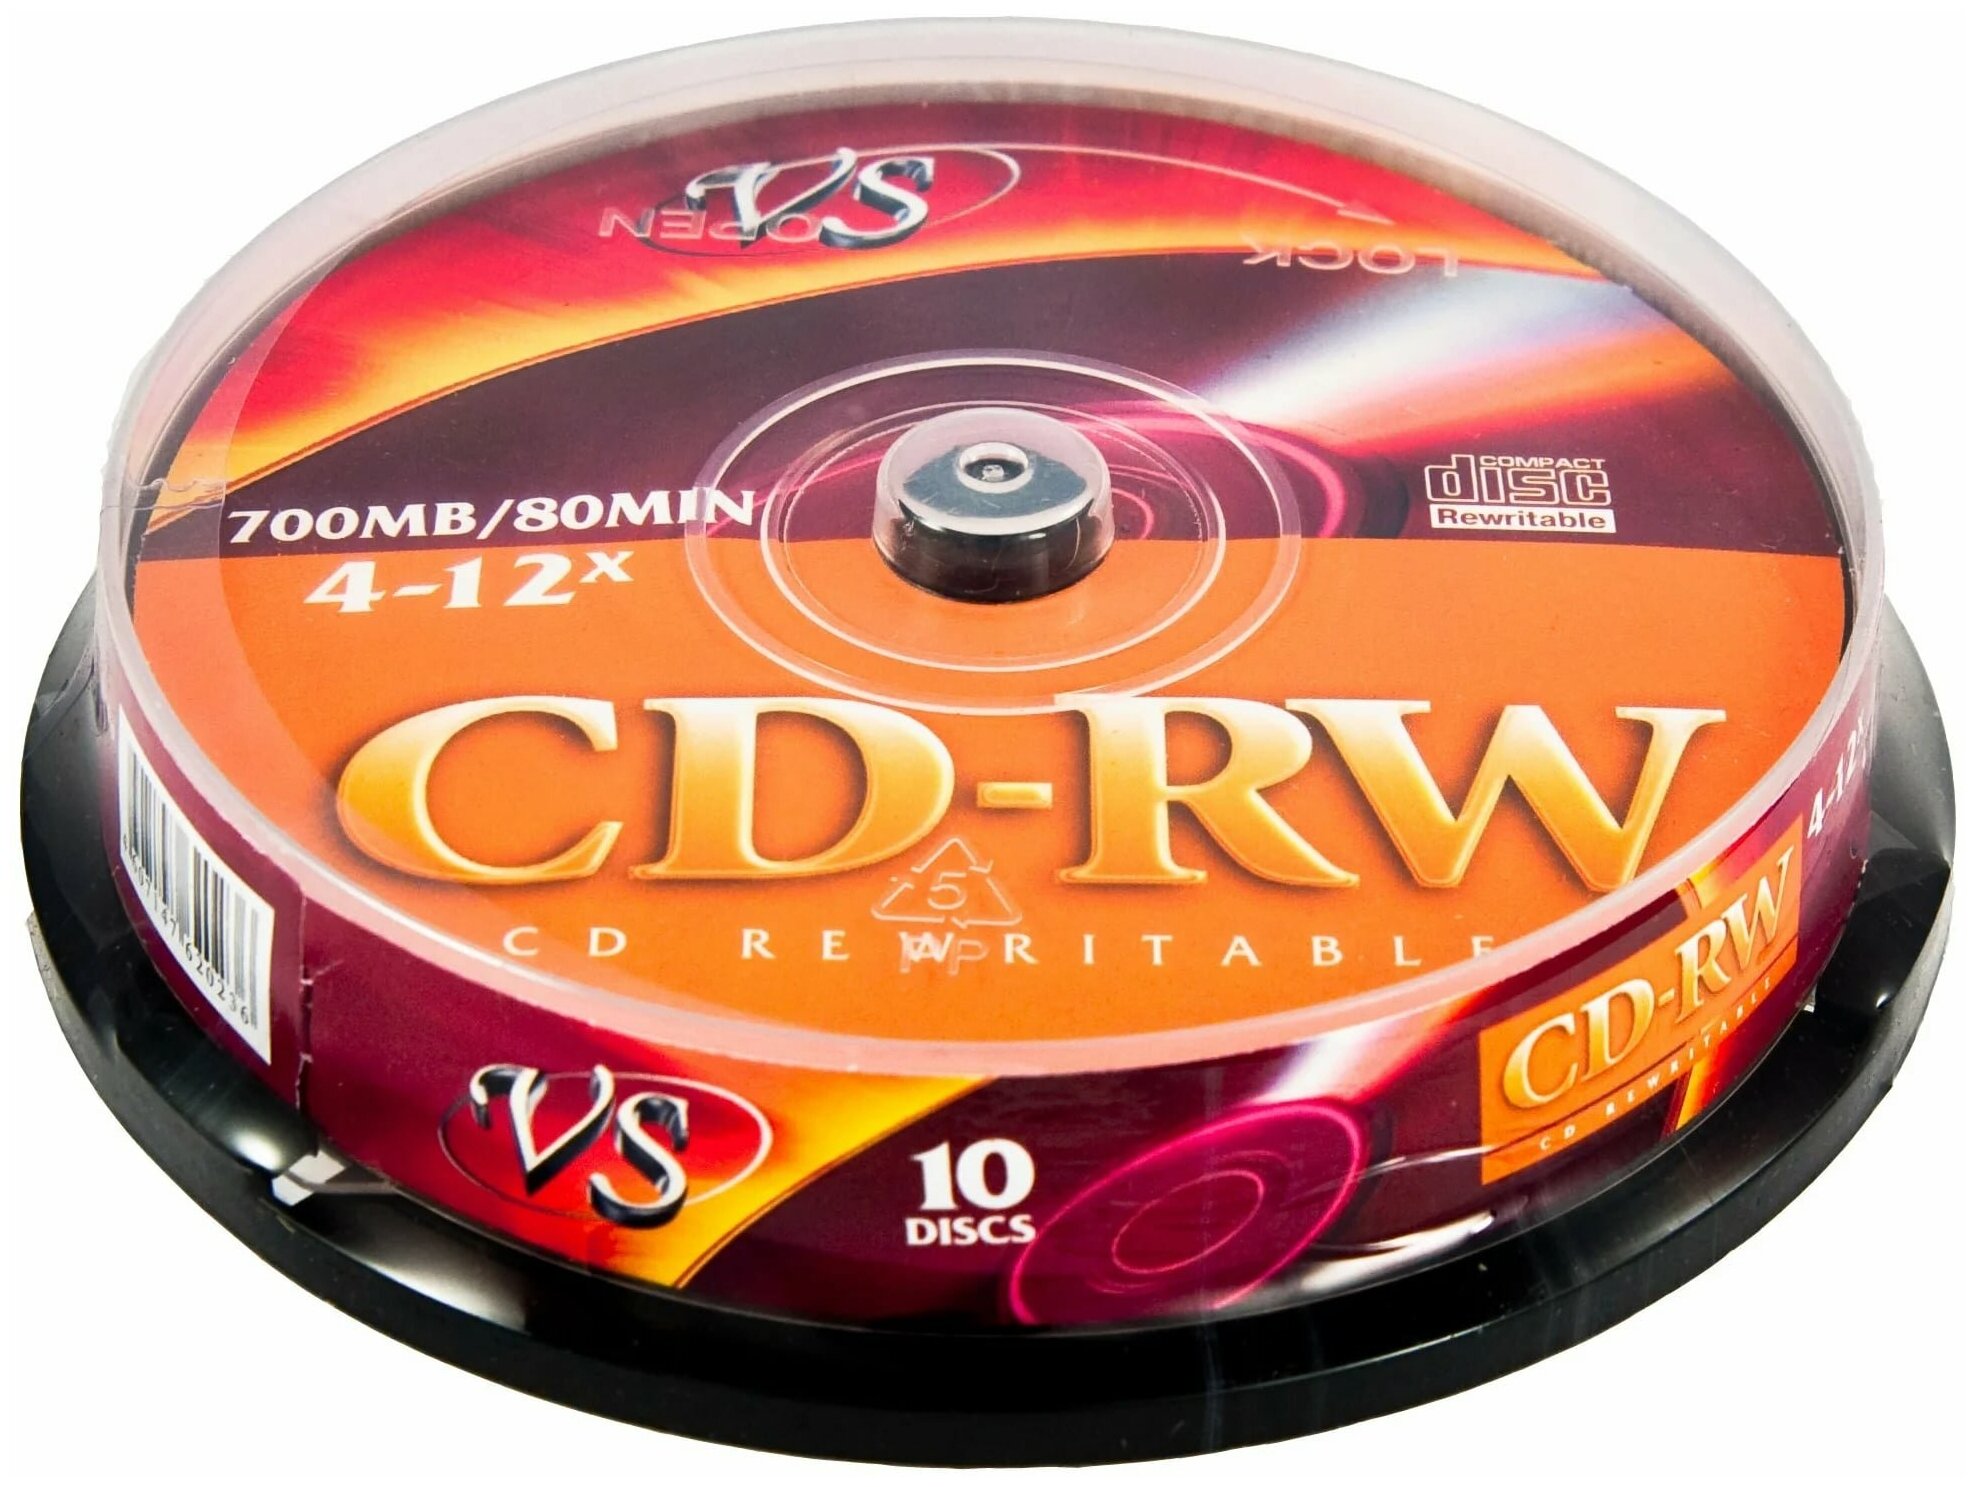 VS Диск для записи, CD-RW 80 4-12x CB/10 700 МБ